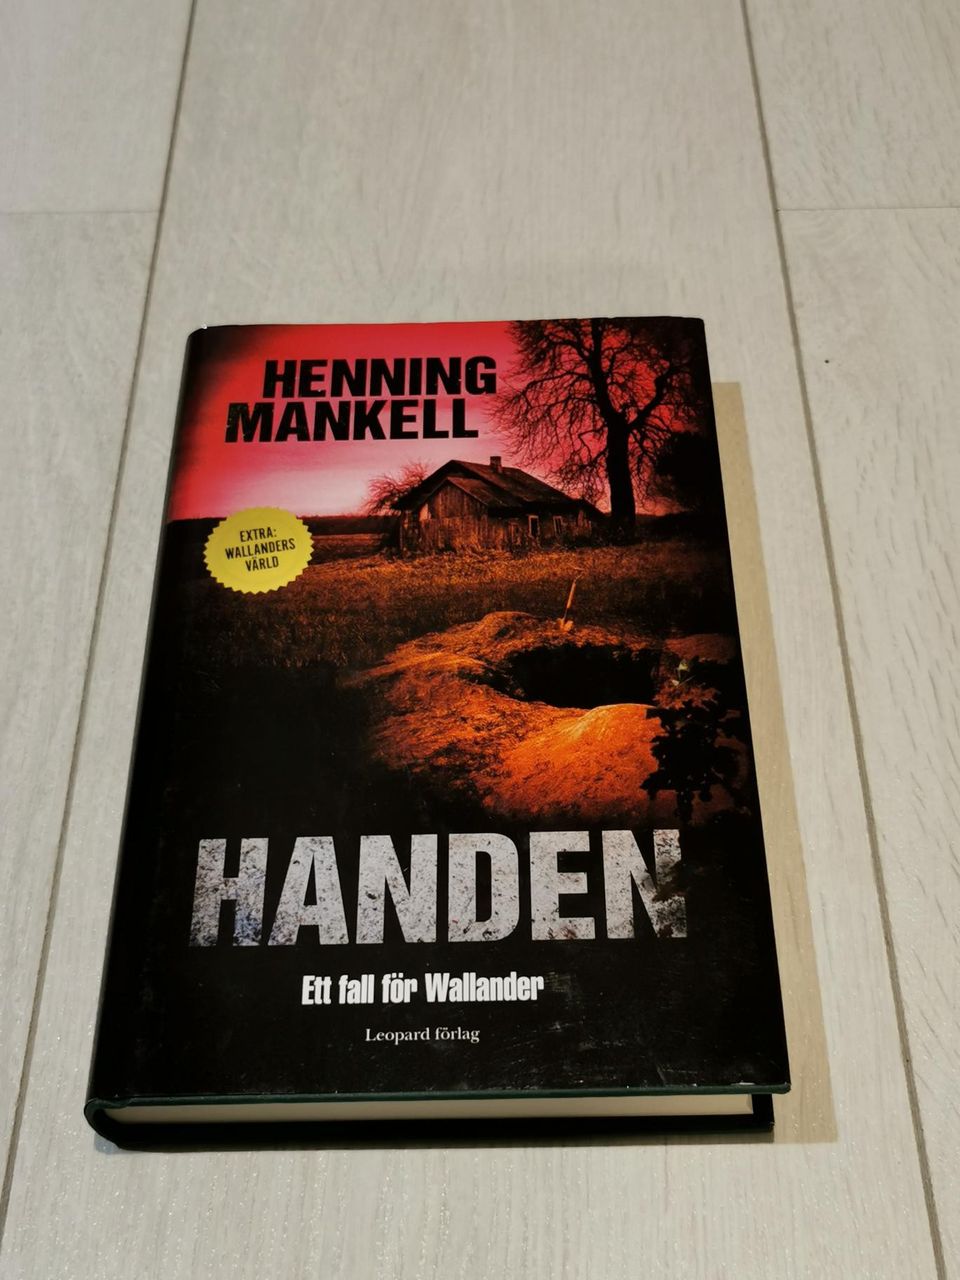 Henning Mankell - Handen, Ett fall för Wallander